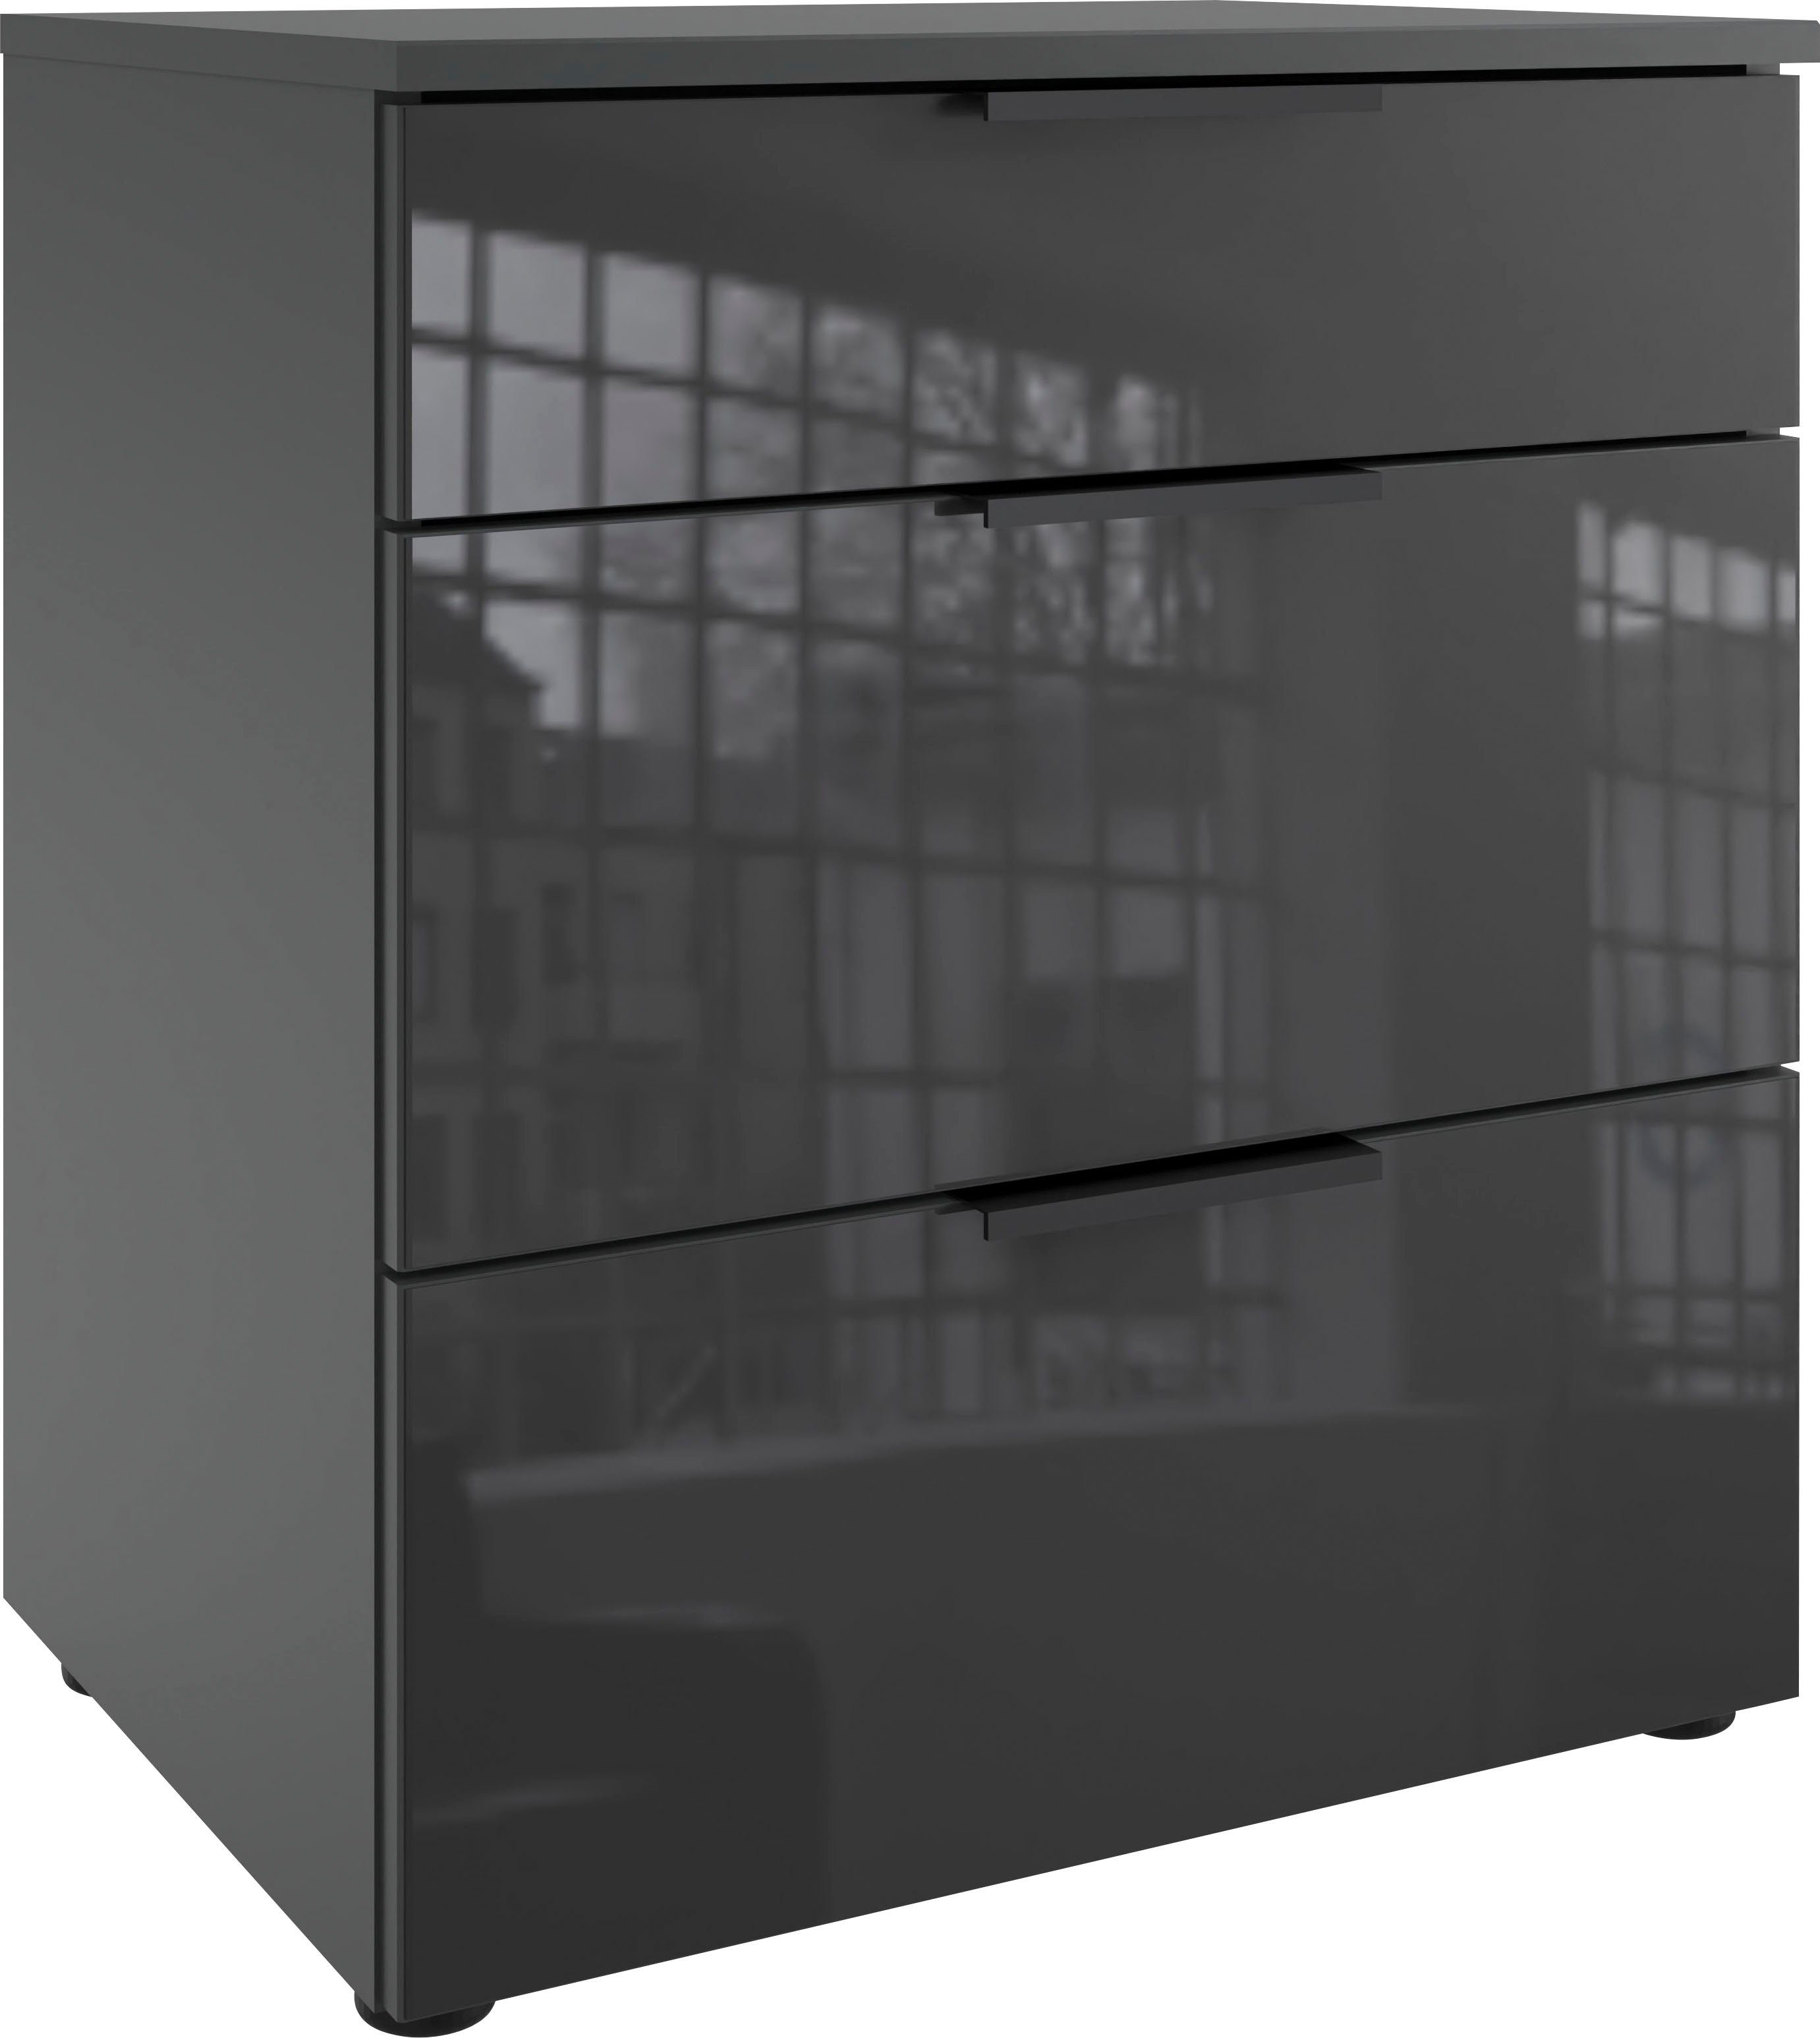 wimex nachtkastje level36 black c by fresh to go met glazen elementen aan de voorkant, soft-close functie, 54 cm breed wit